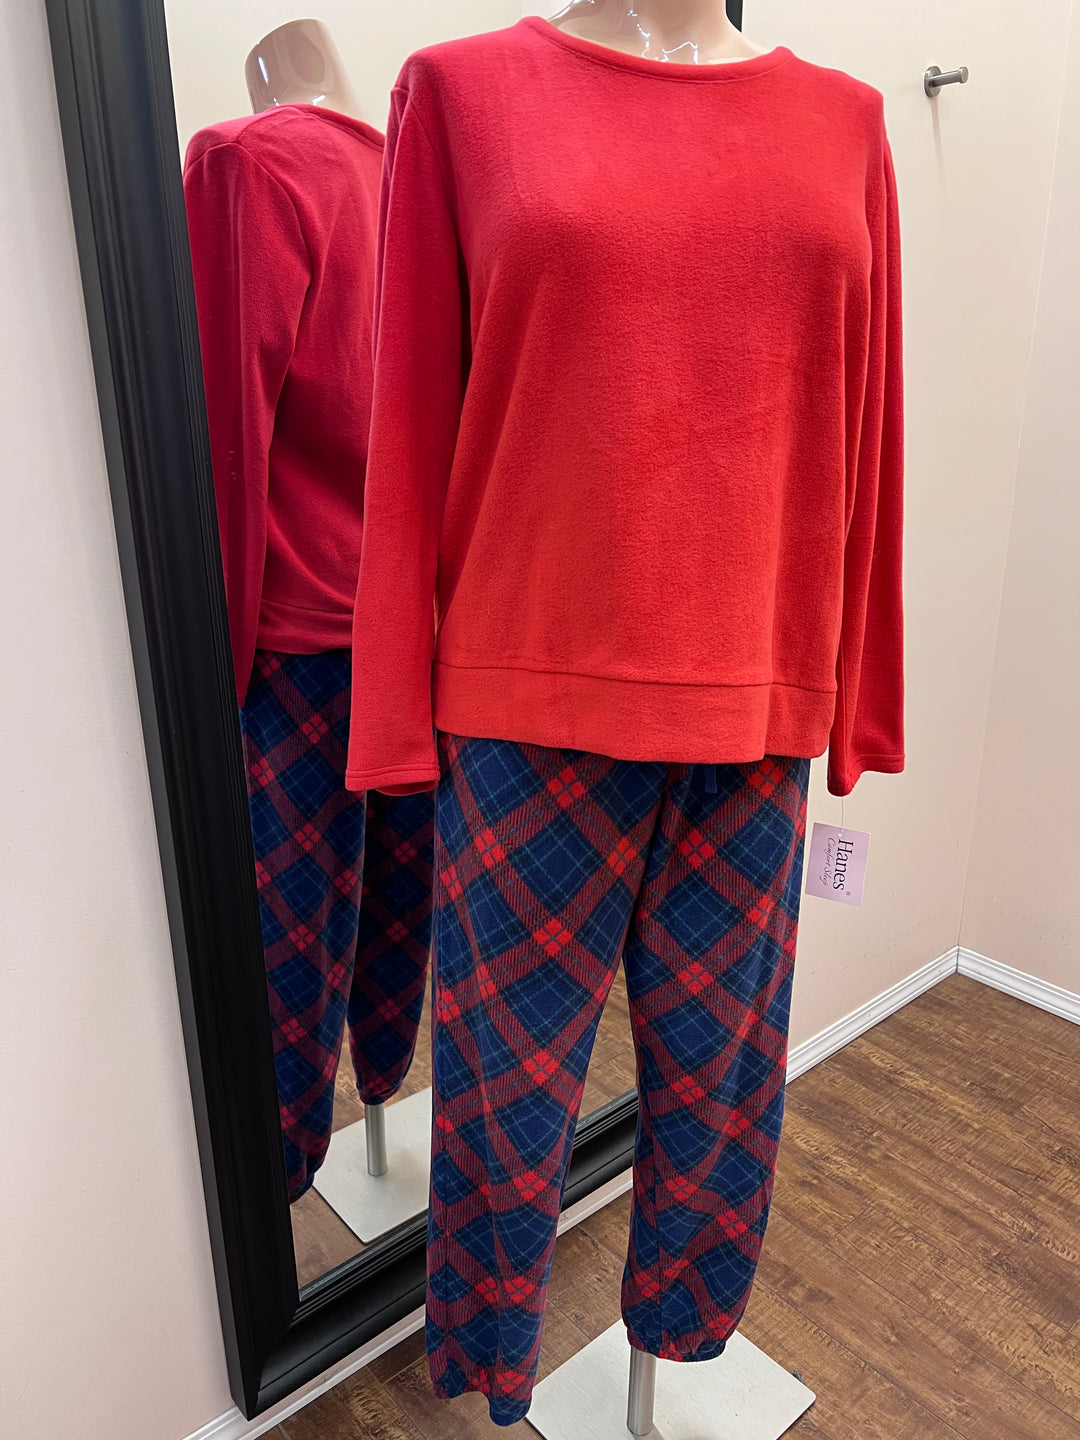 NEW Red Bird Pajamas Plus Size 2X Women 3 Piece Set Fleece Winter +Socks  XXL NWT